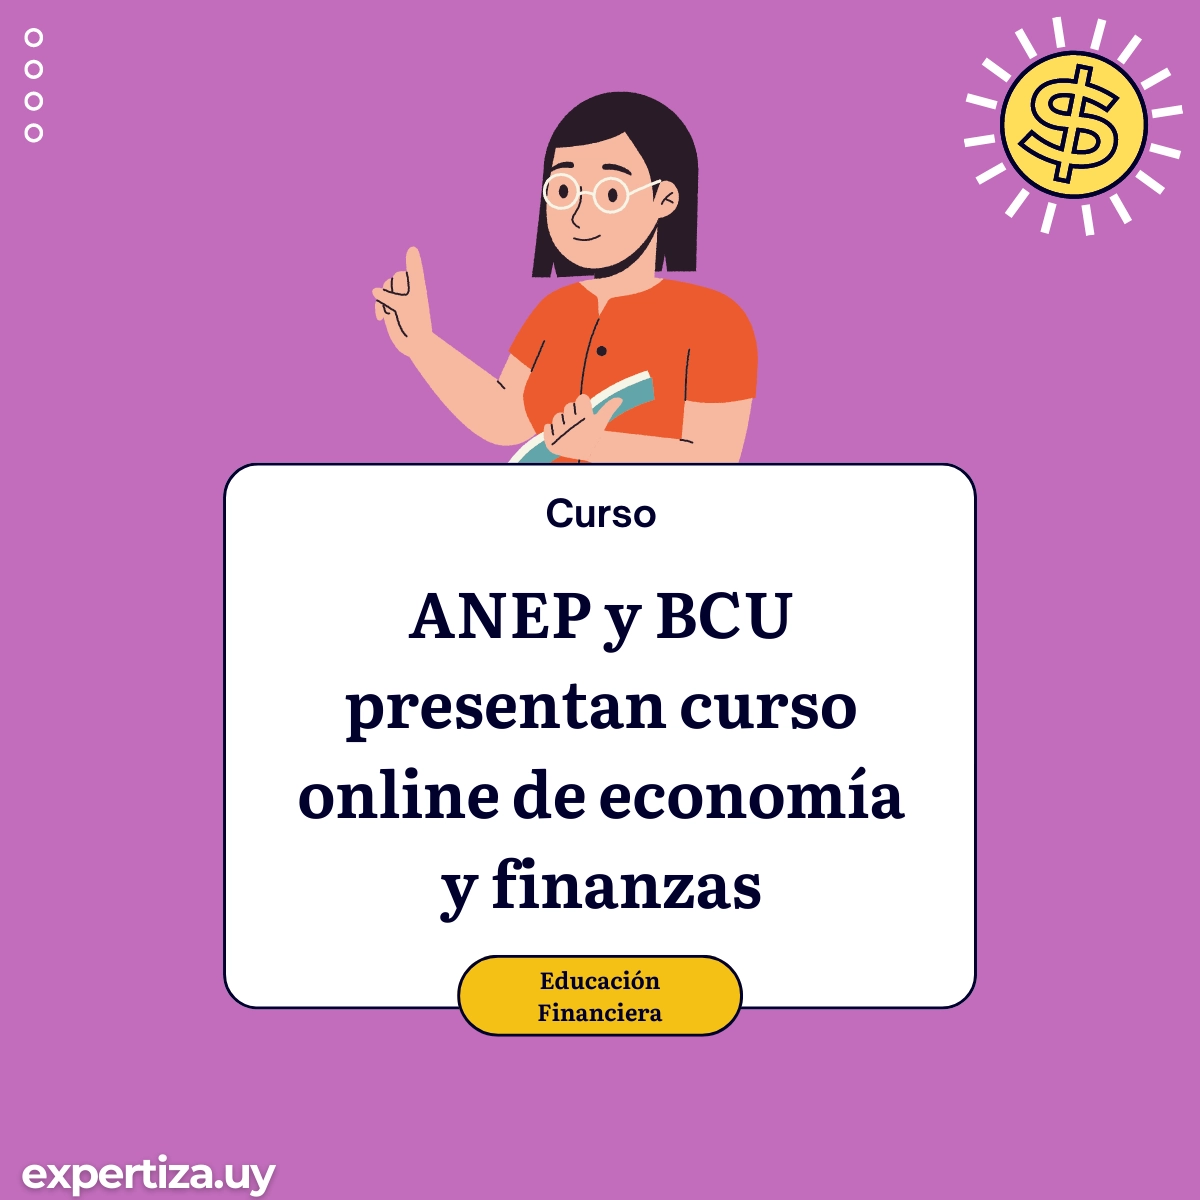 ANEP y BCU presentan curso online de economía y finanzas.